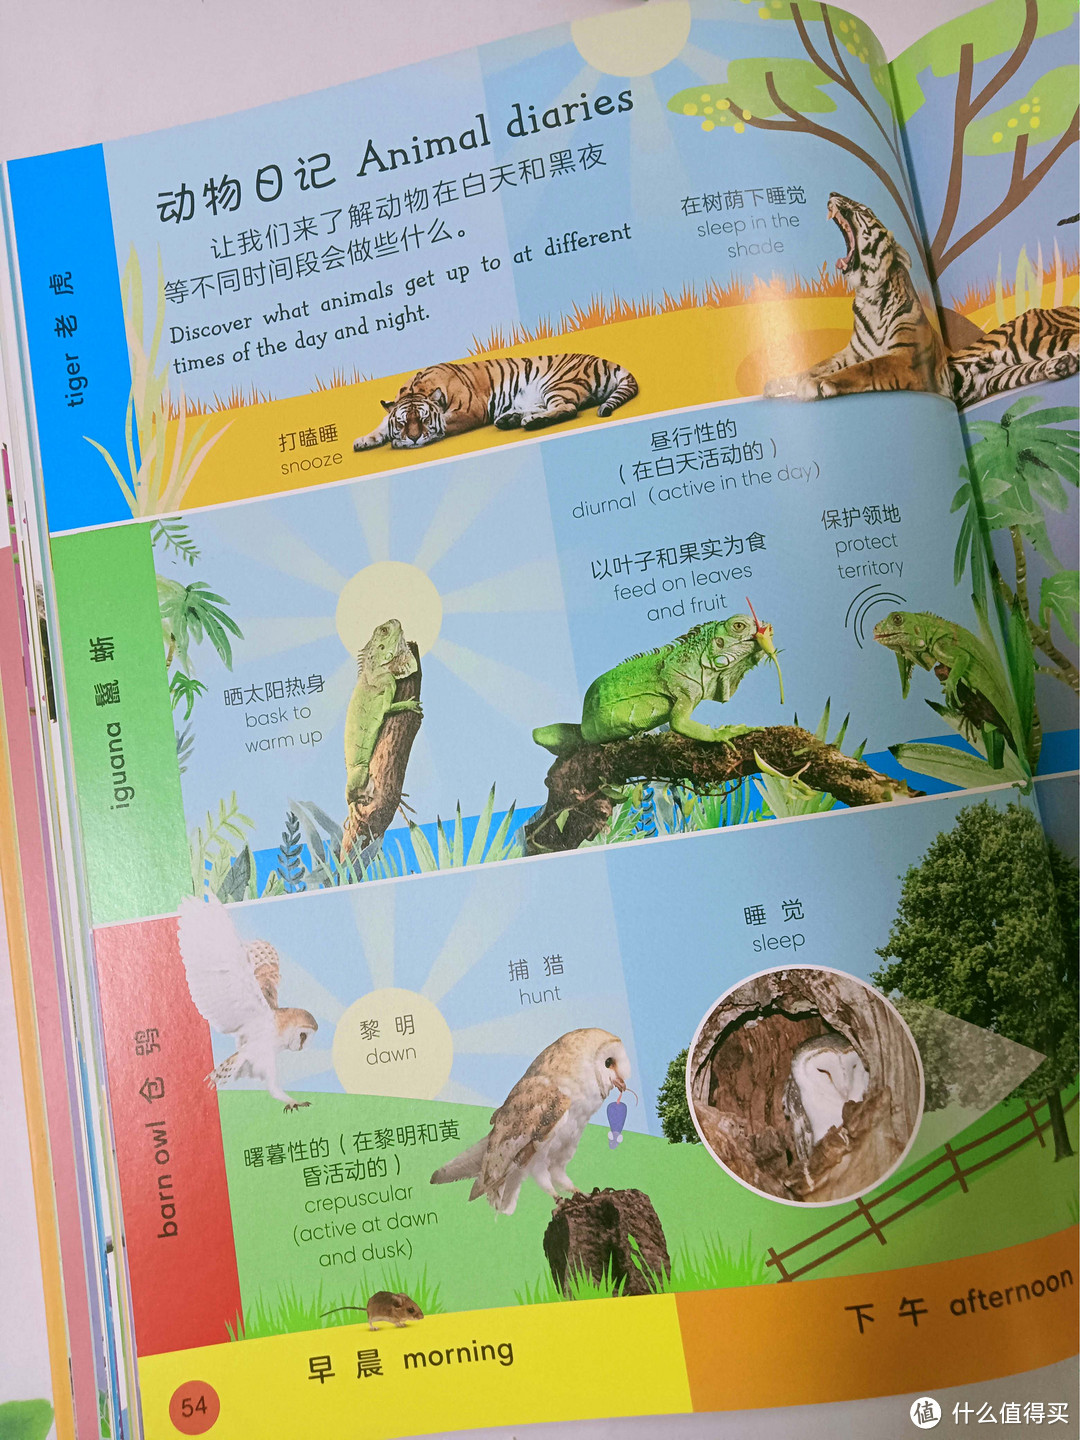 《DK动物双语词汇1000》：探索动物世界，轻松学习英语